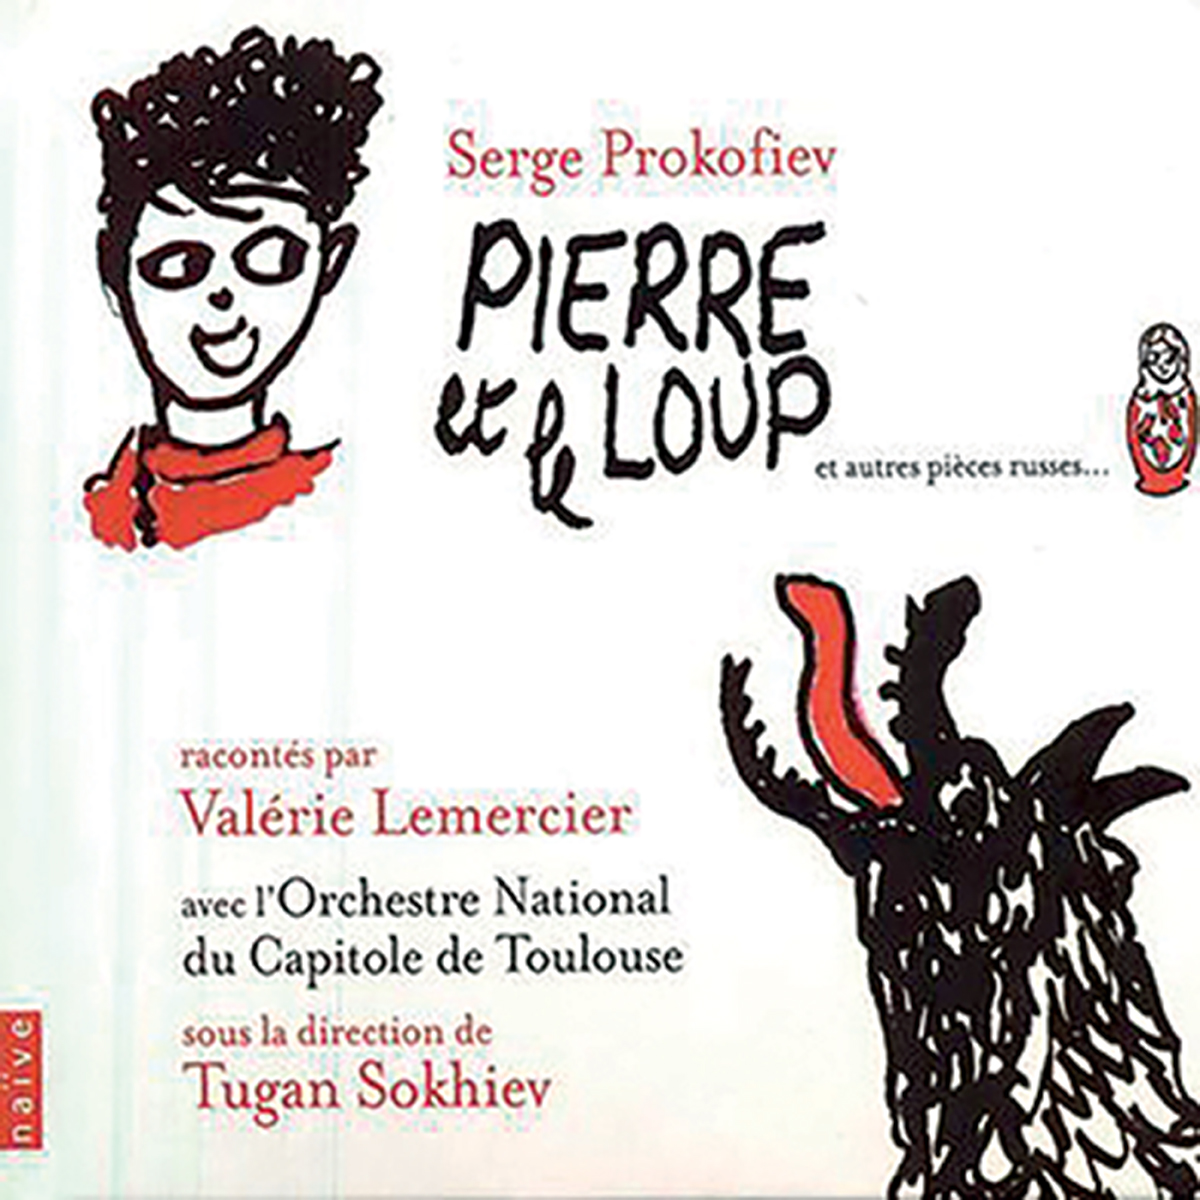 Album de Serge Profofiev, Pierre et le loup